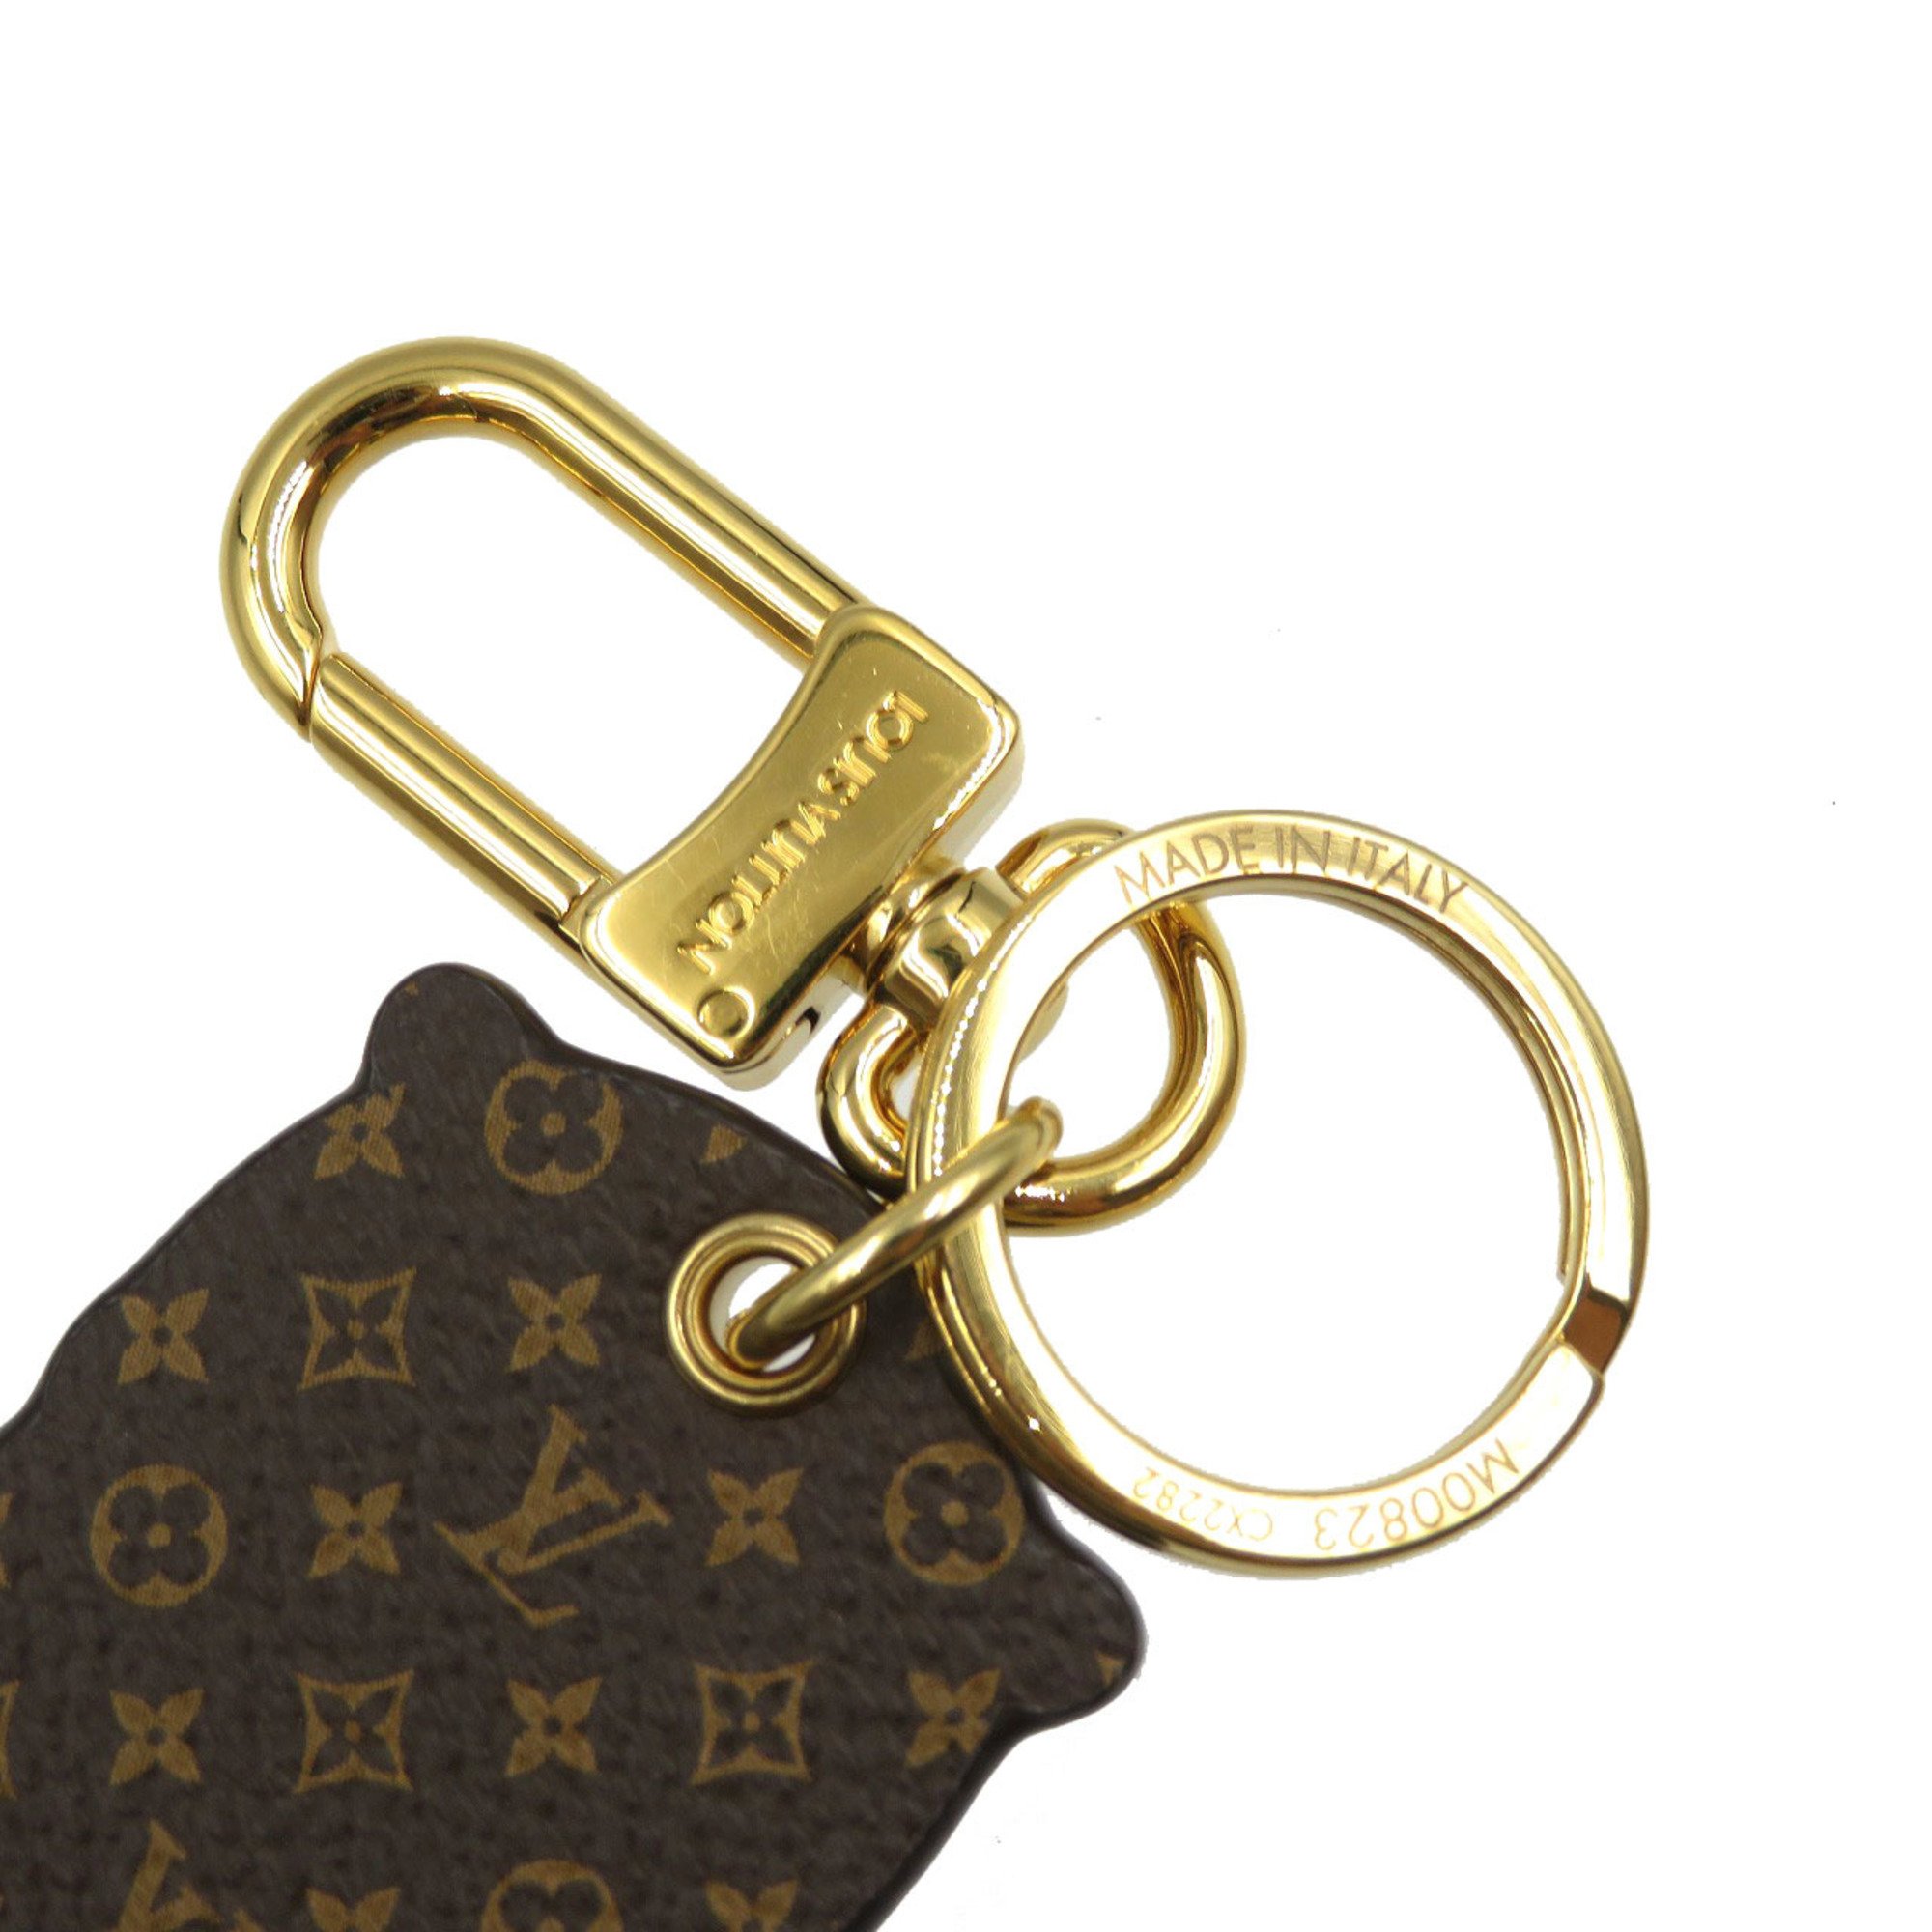 Louis Vuitton Porte Cle Otter M00823 Monogram Canvas Metal Brown Gold Bag Charm Keychain 0124LOUIS VUITTON